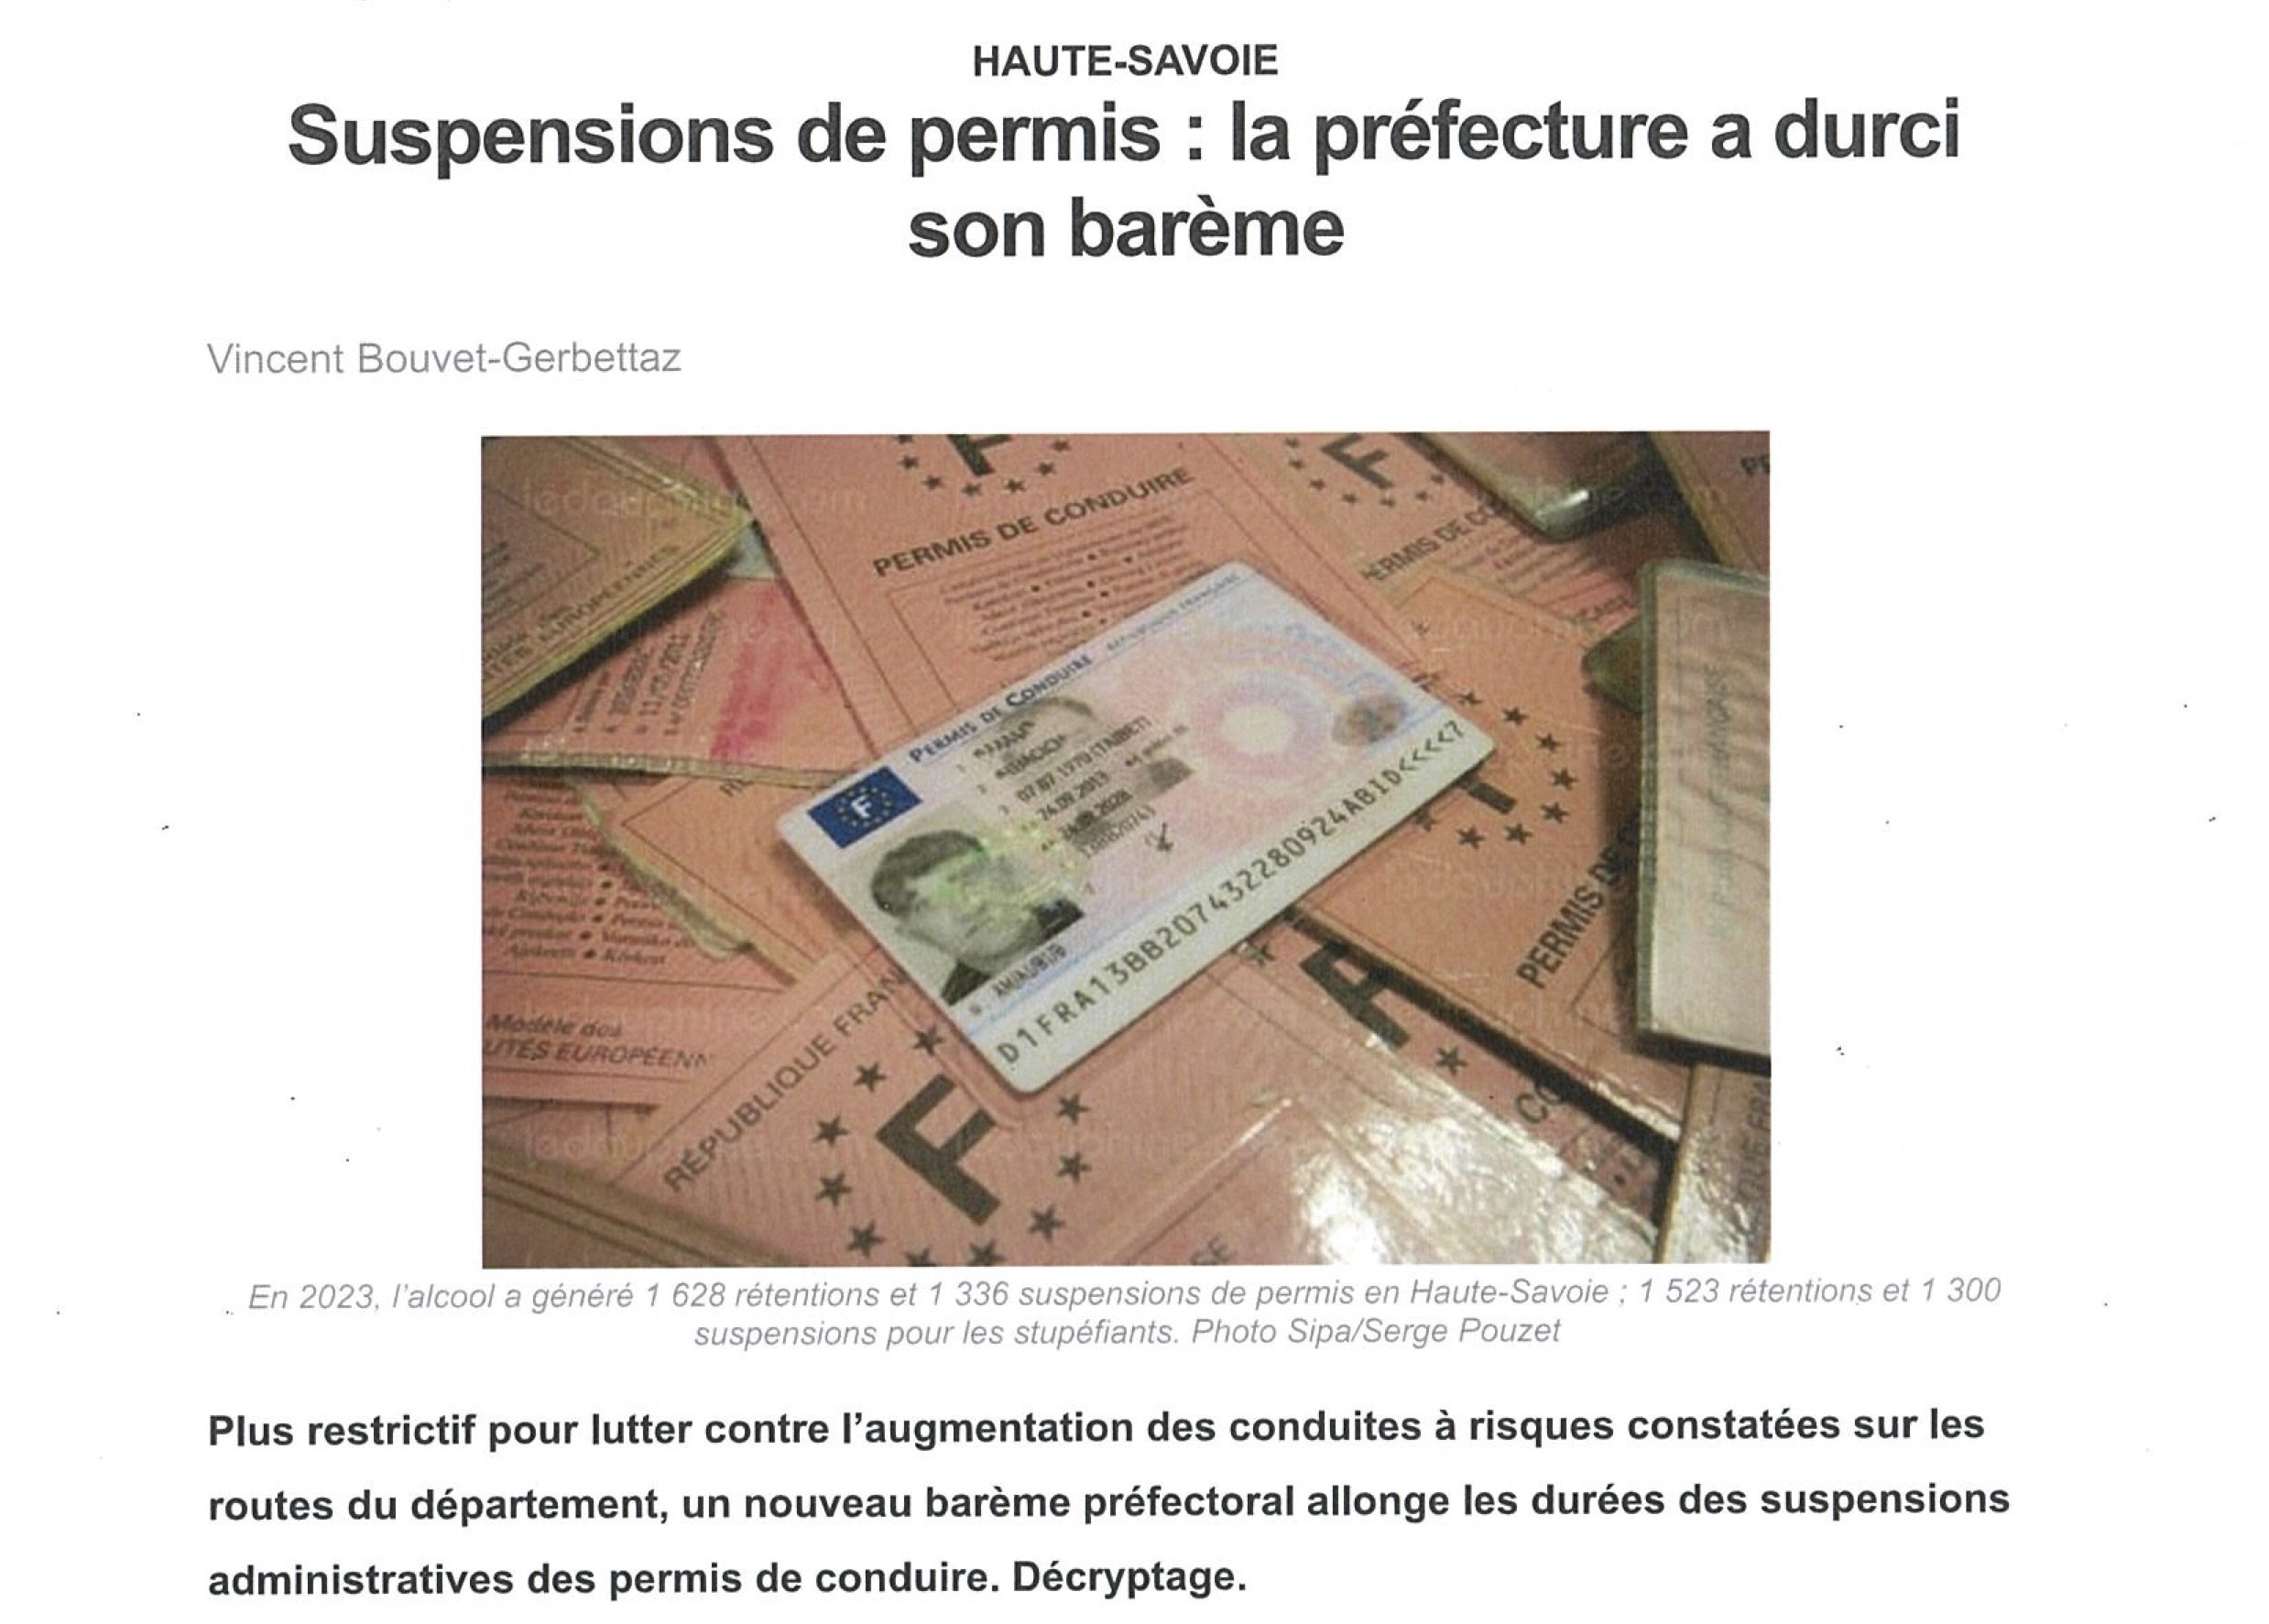 Suspensions de permis : la préfecture a durci son barème